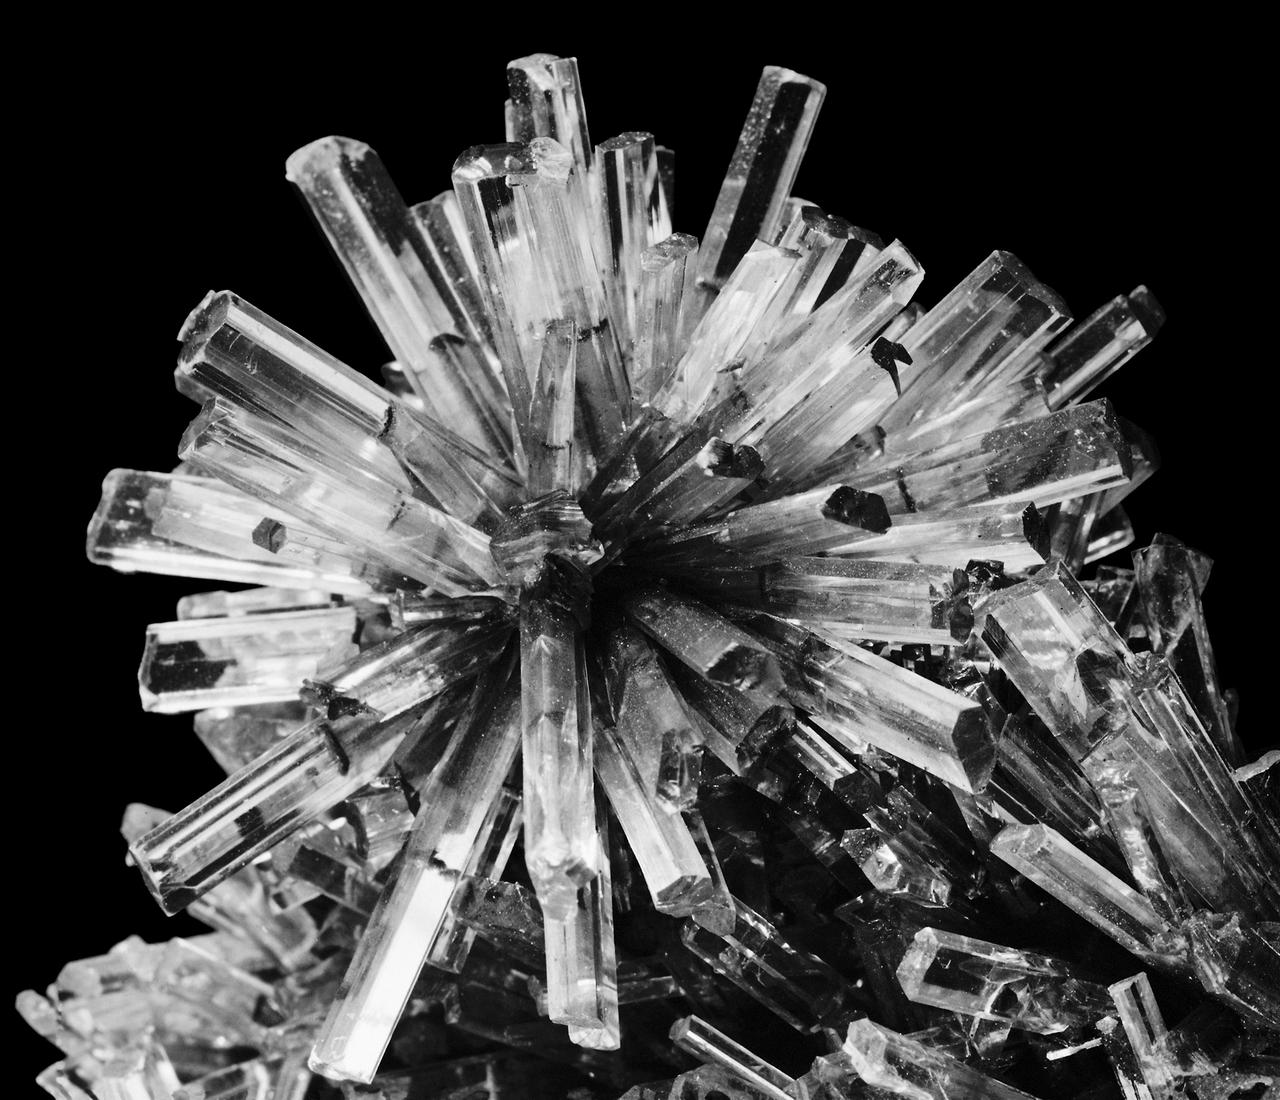 Nahaufnahme einer kugelförmigen Kristall-Formation, deren röhrenartige, durchsichtige Einzelkristalle strahlenförmig in alle Richtungen auseinander streben. (Schwarz-weiß-Fotografie)